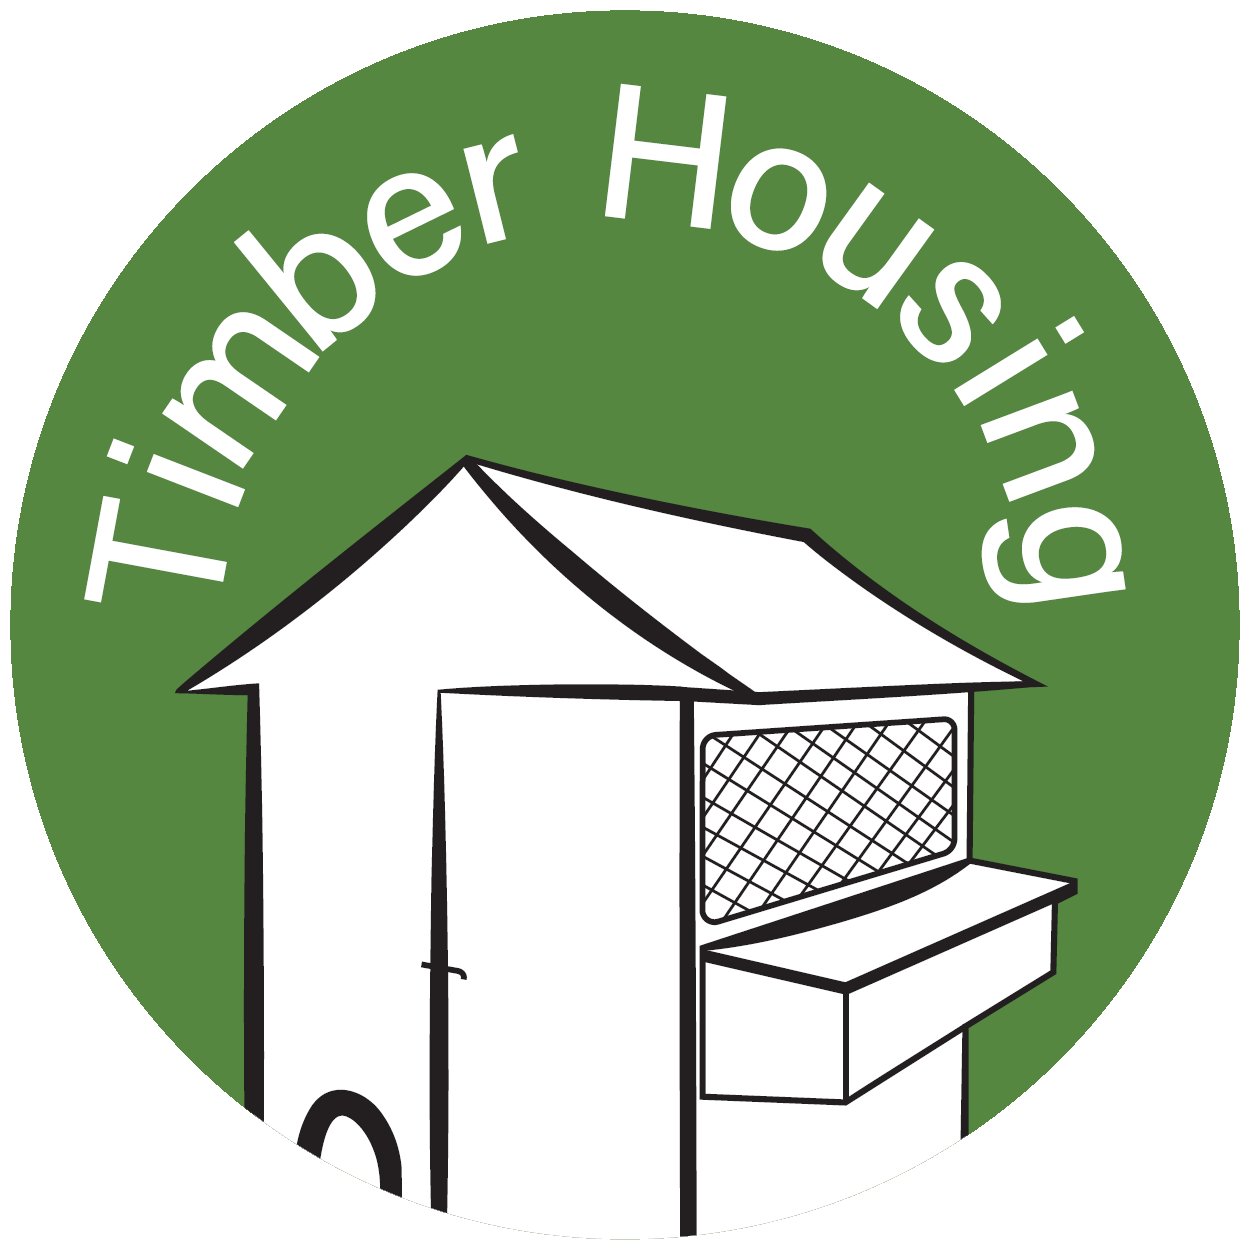 Timber Housing Range